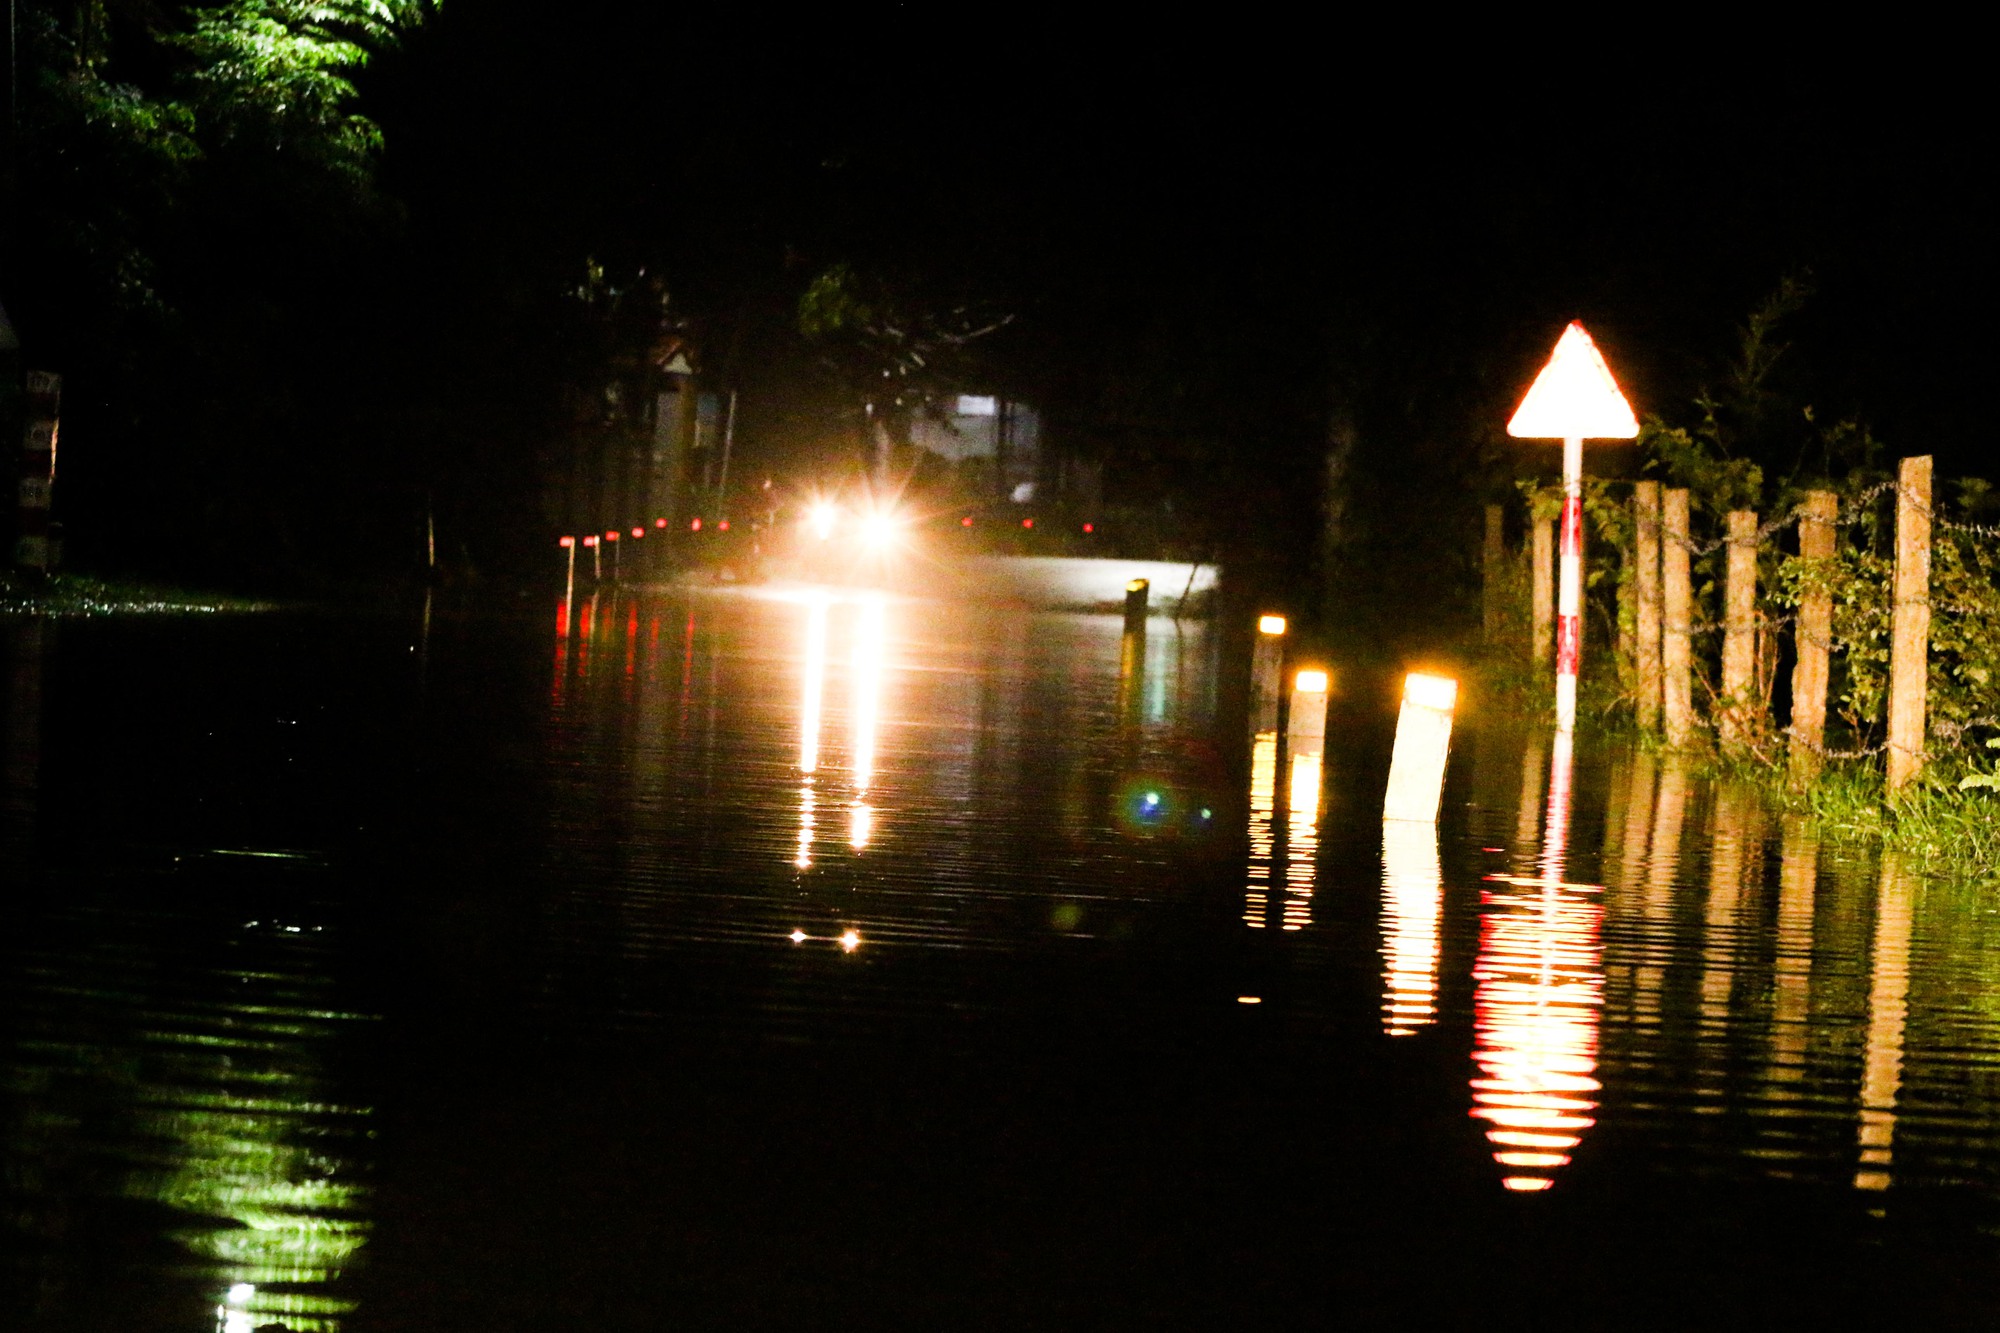 Đà Nẵng: Nước sông Túy Loan dâng cao, người dân thức đêm chạy xe đi tránh lụt - Ảnh 1.